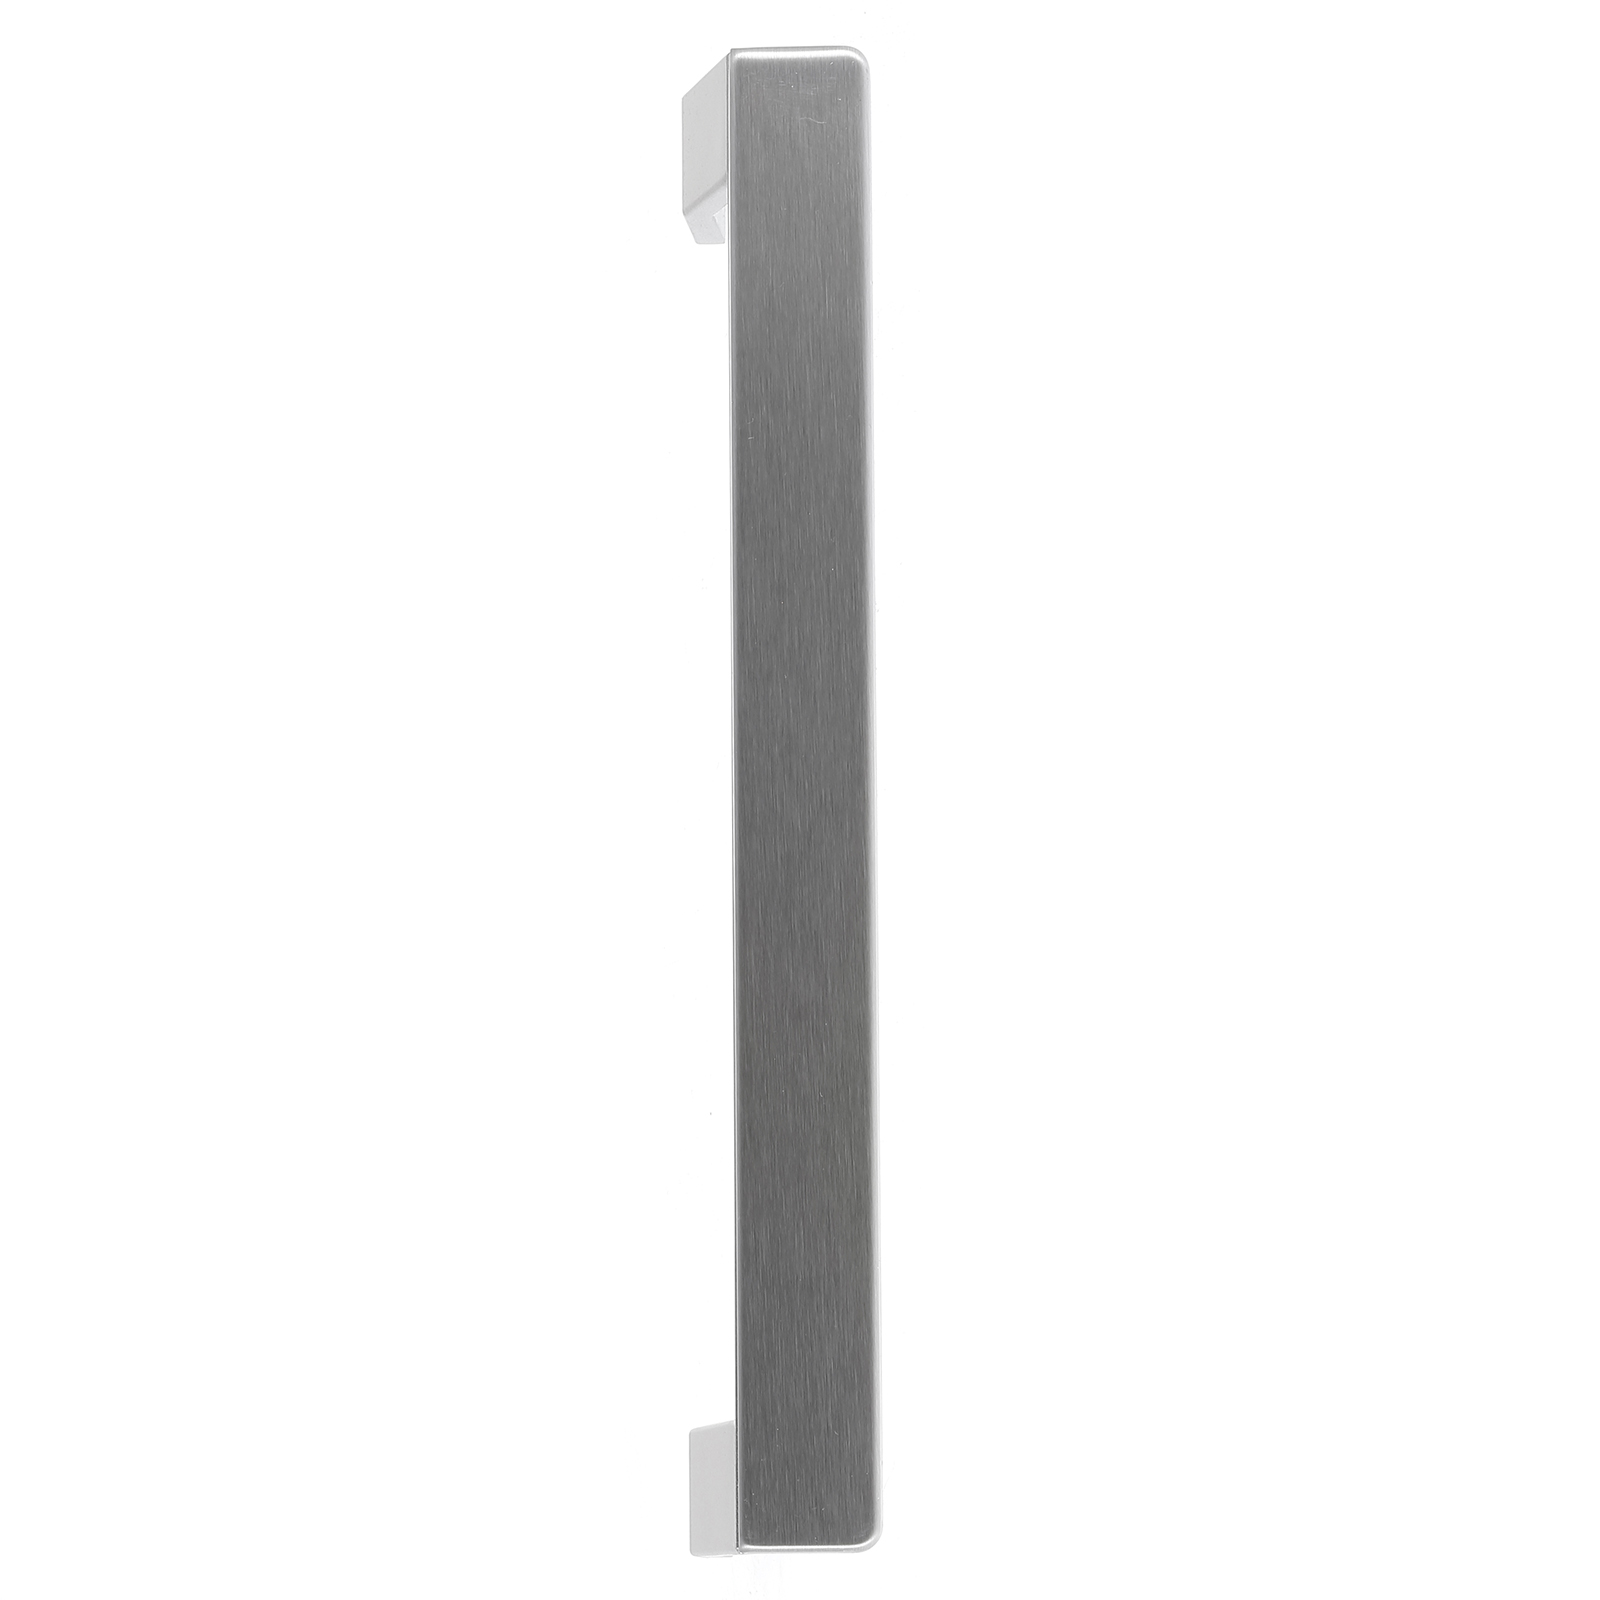 Blomberg Fridge Freezer Door Handle - Silver 5907610300